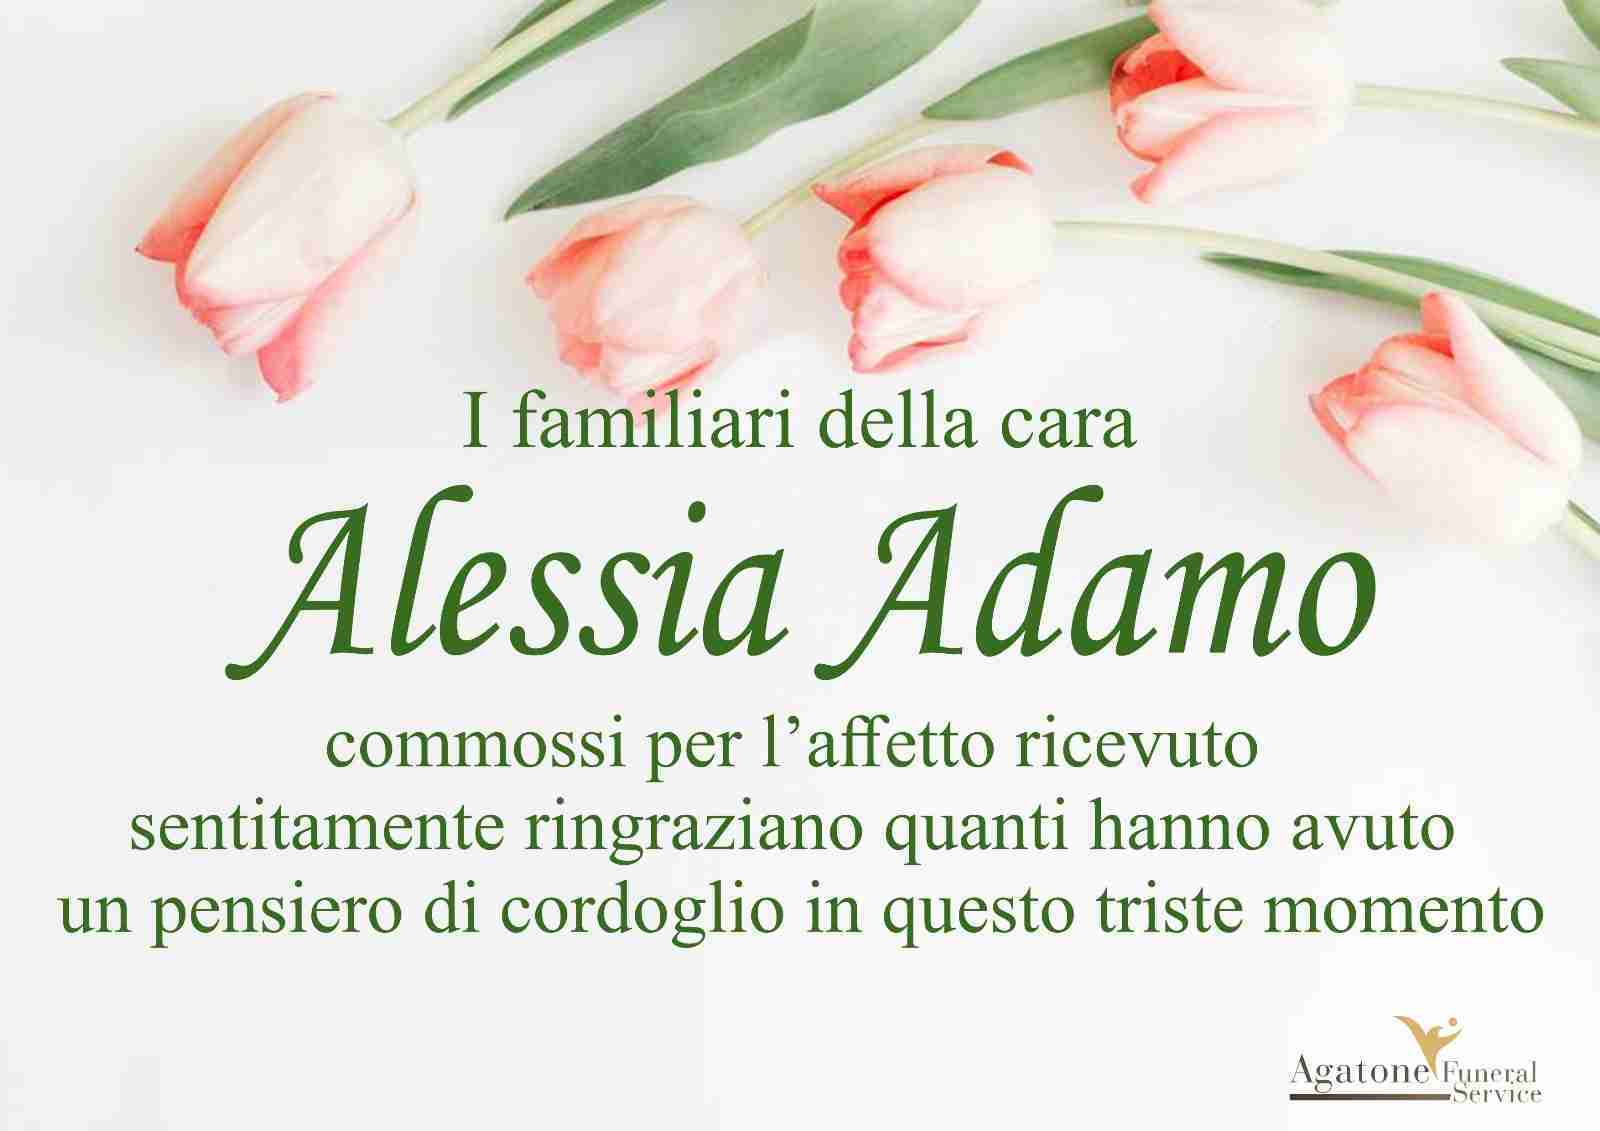 Alessia Adamo